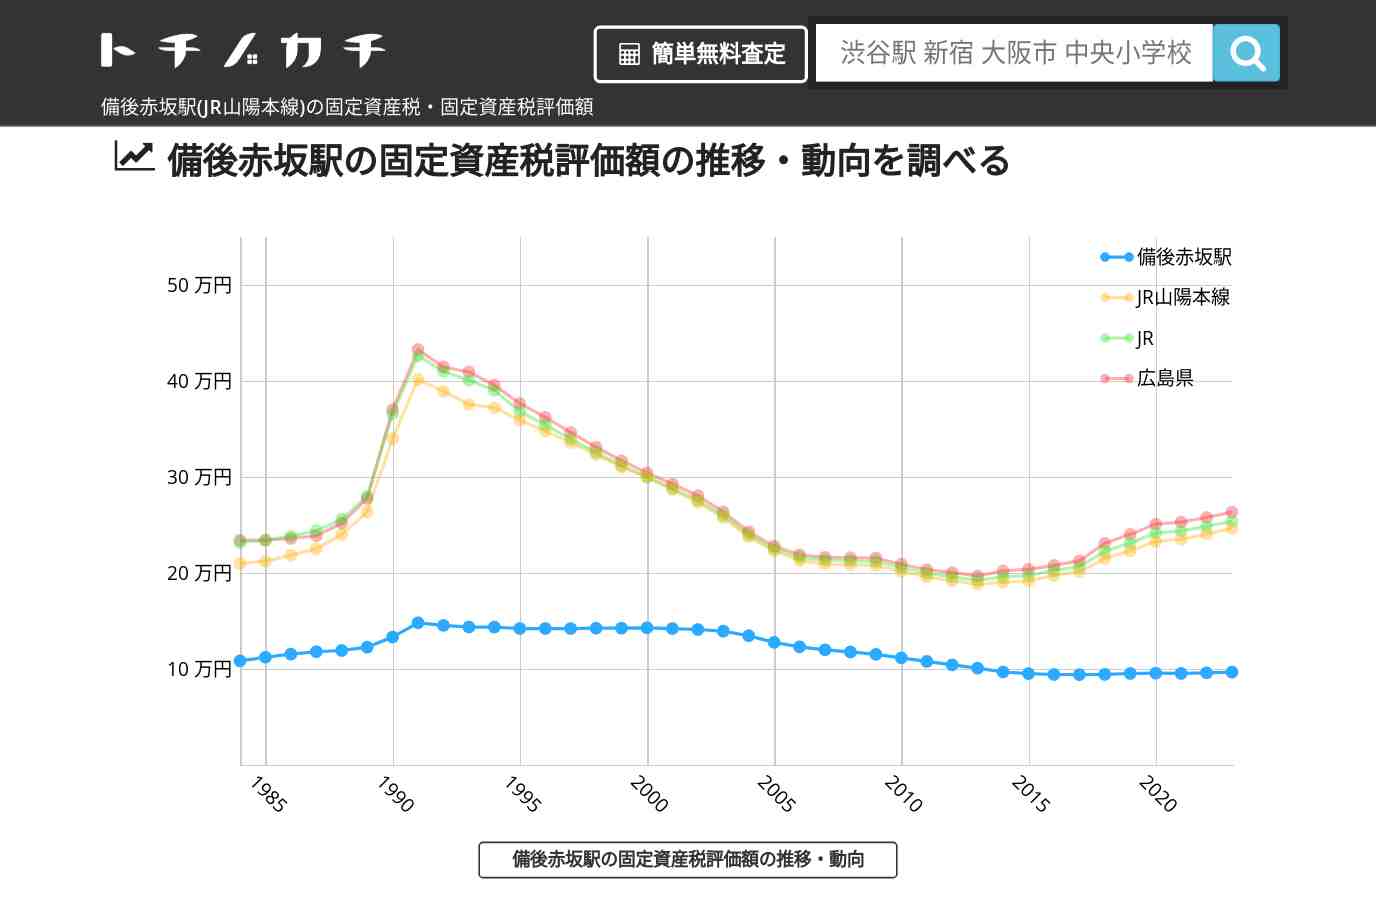 備後赤坂駅(JR山陽本線)の固定資産税・固定資産税評価額 | トチノカチ